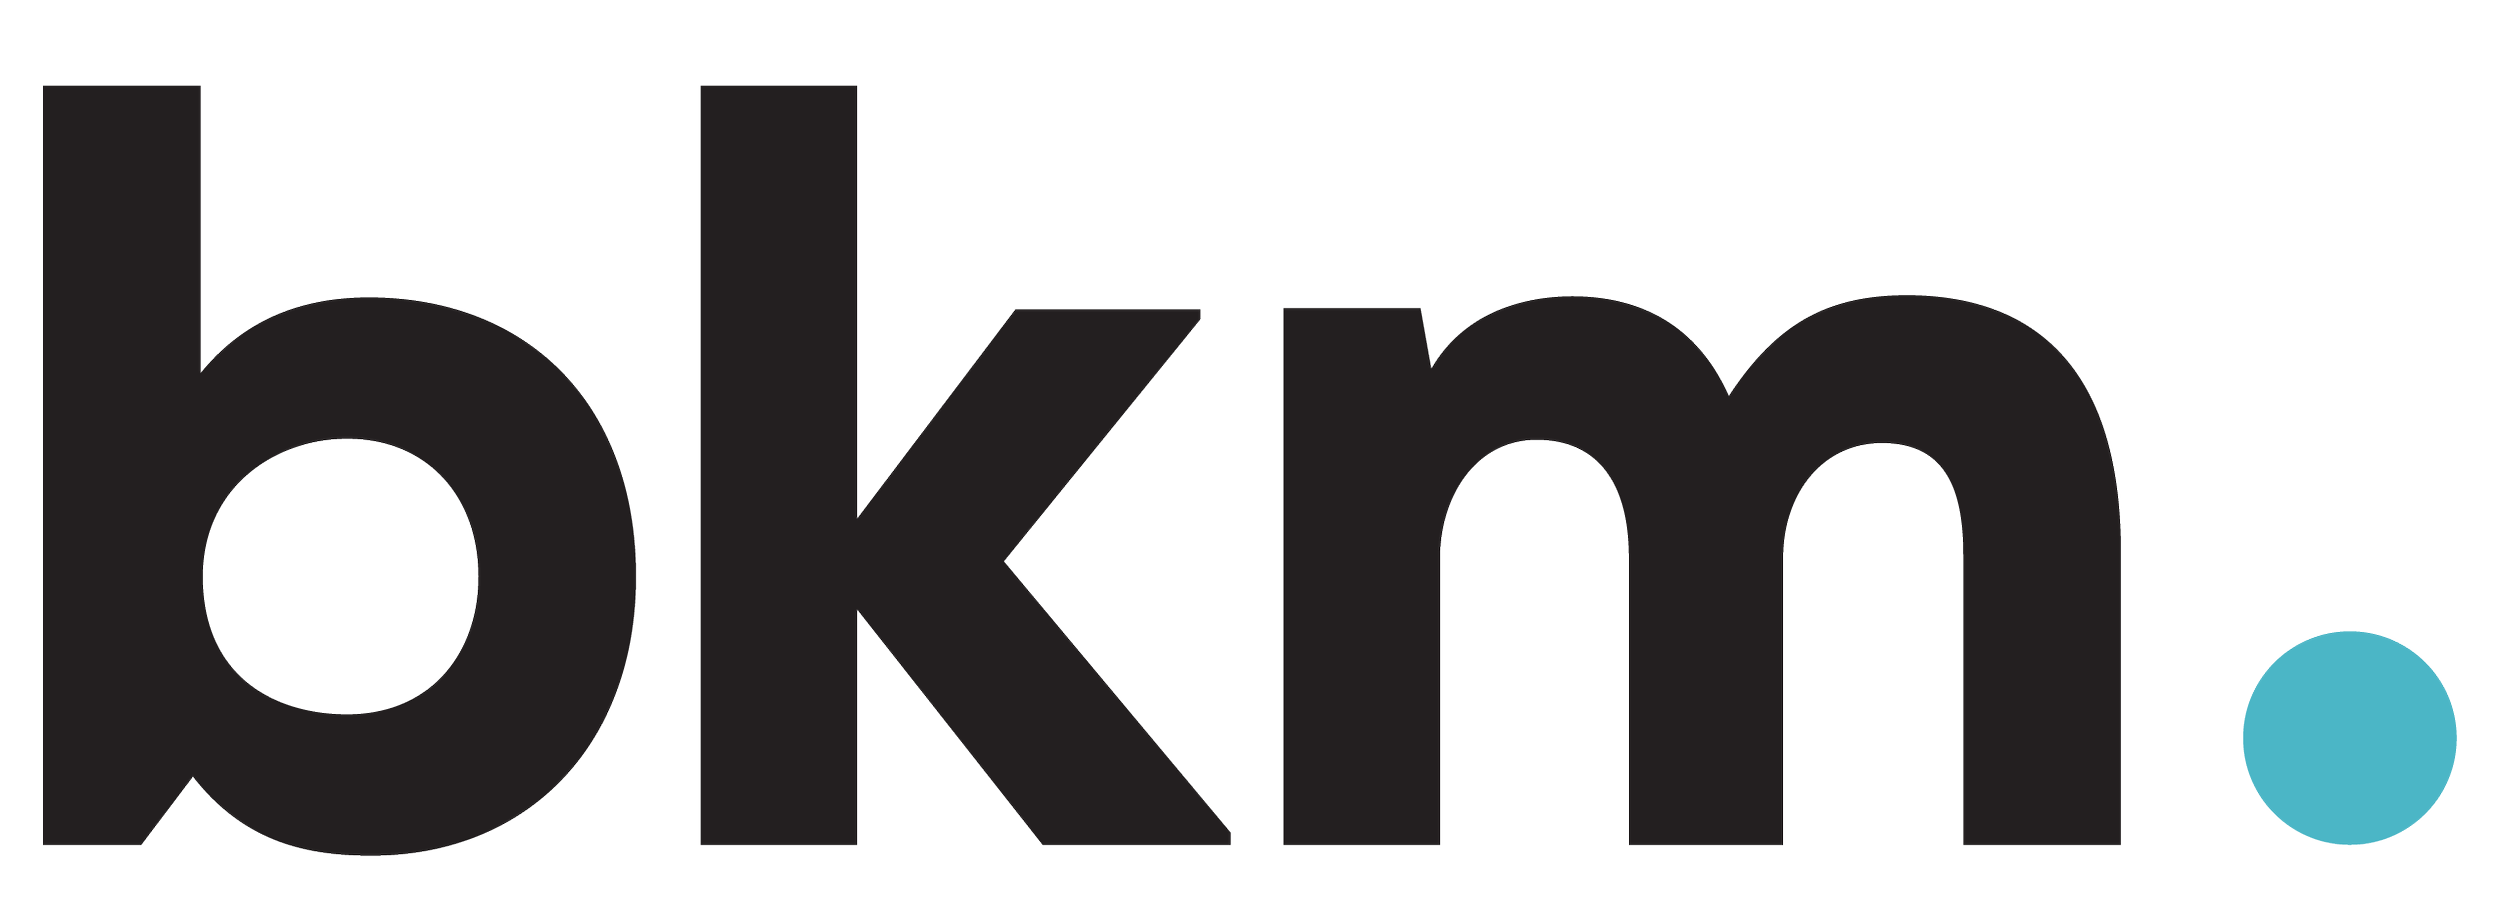 bkm logo 30in-01.png